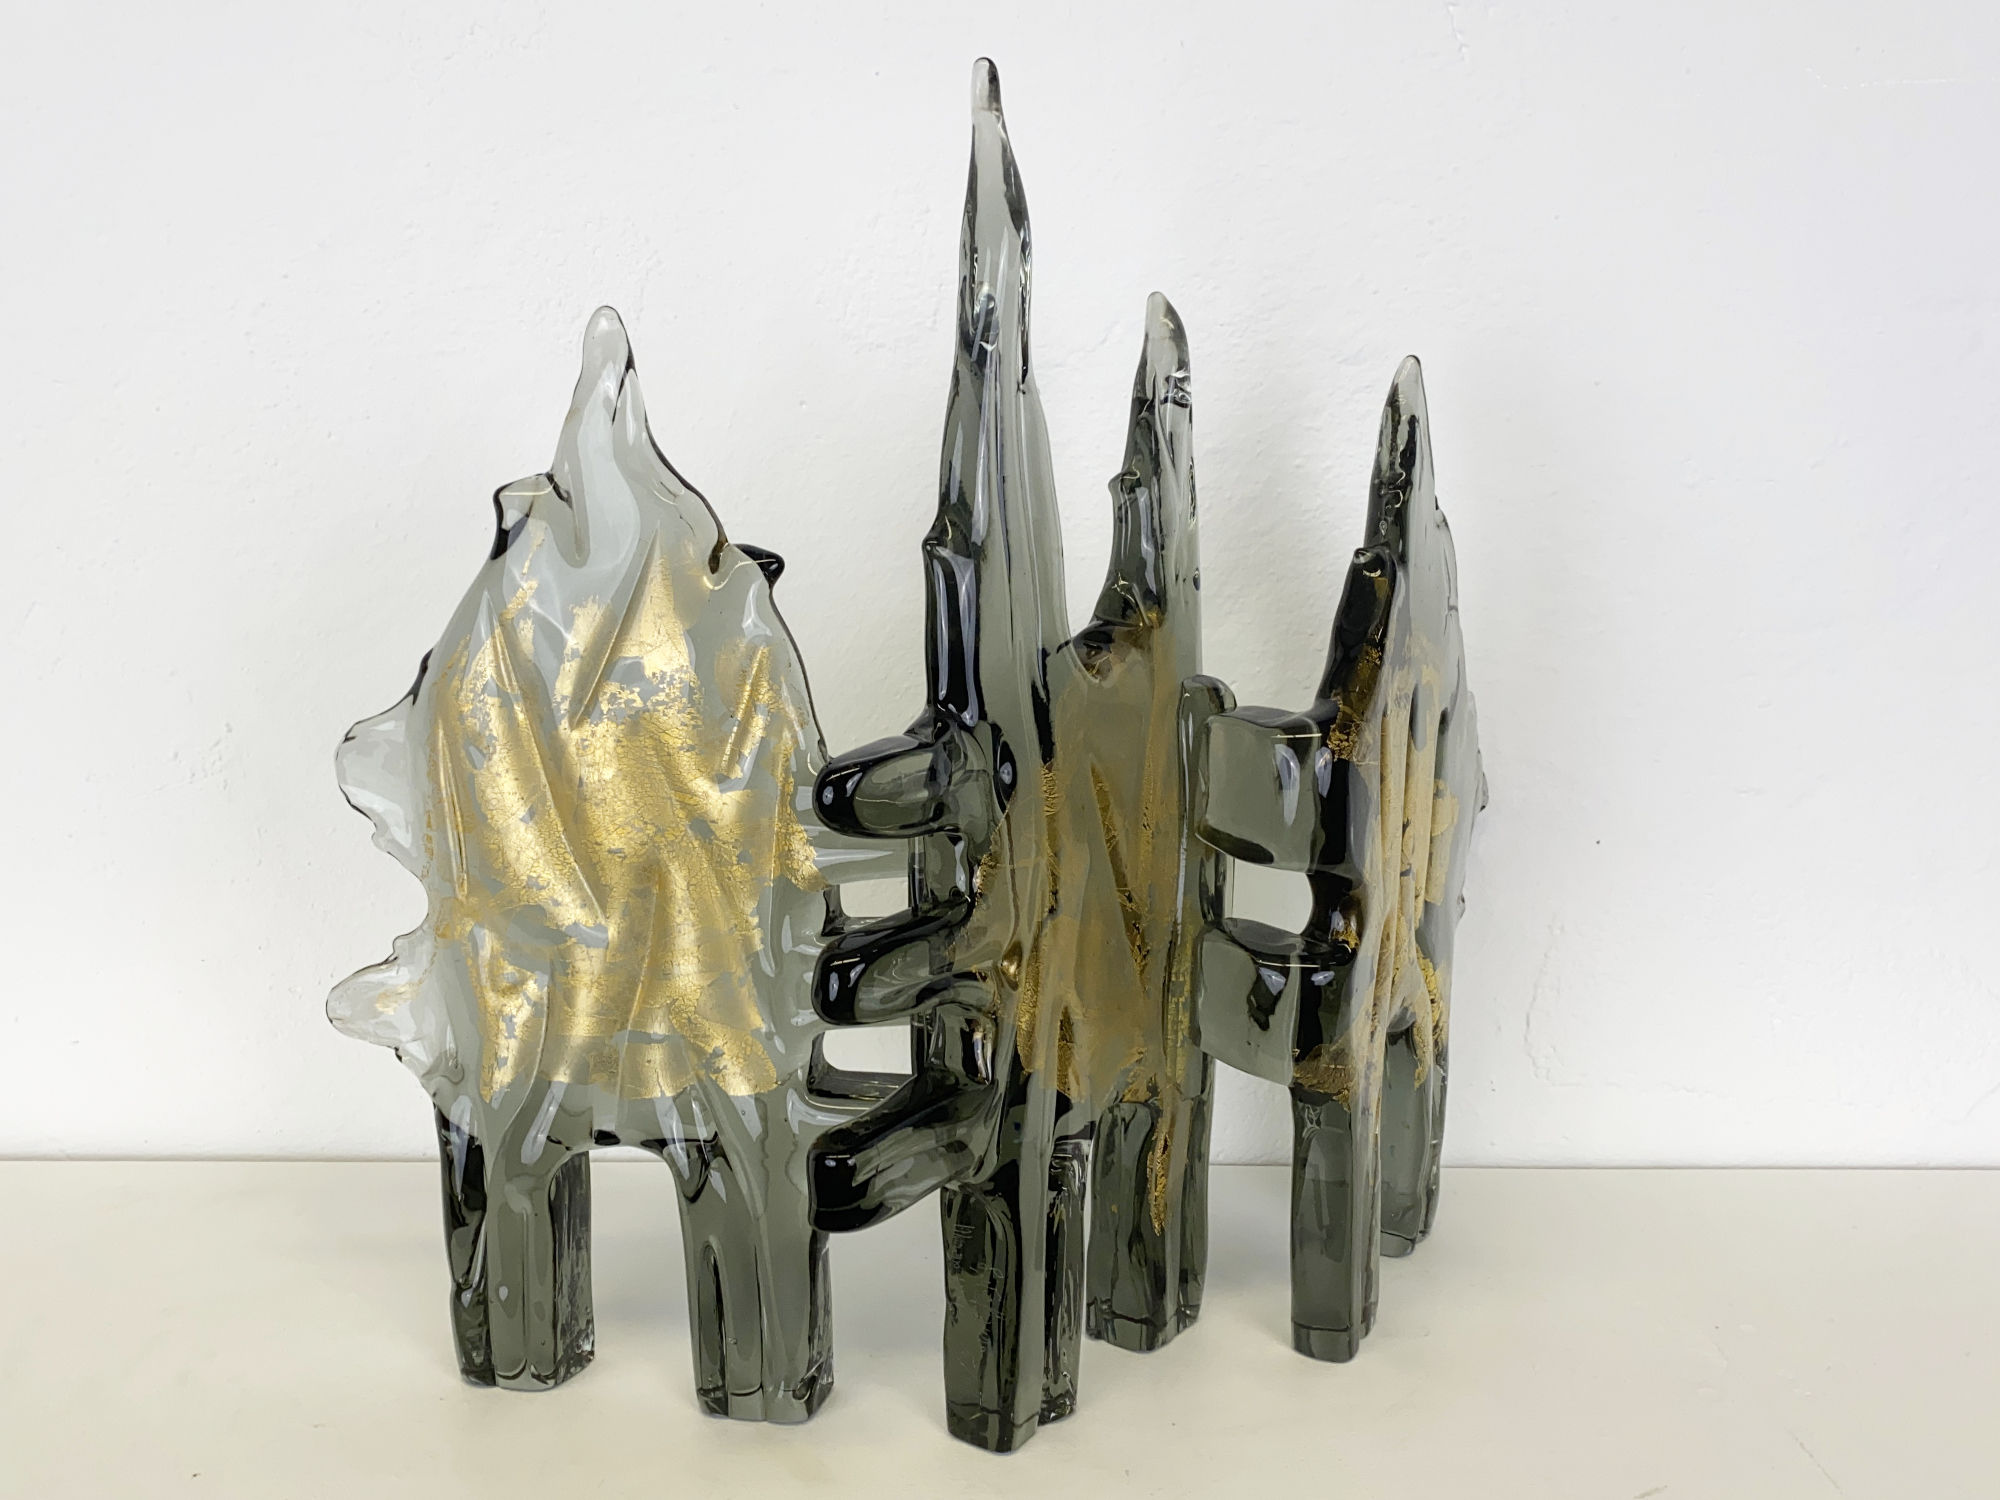 Glas Skulptur / Objekt “Goldwald“, limitierte Auflage 5/10, von Livio Seguso, Murano, Italien 1971